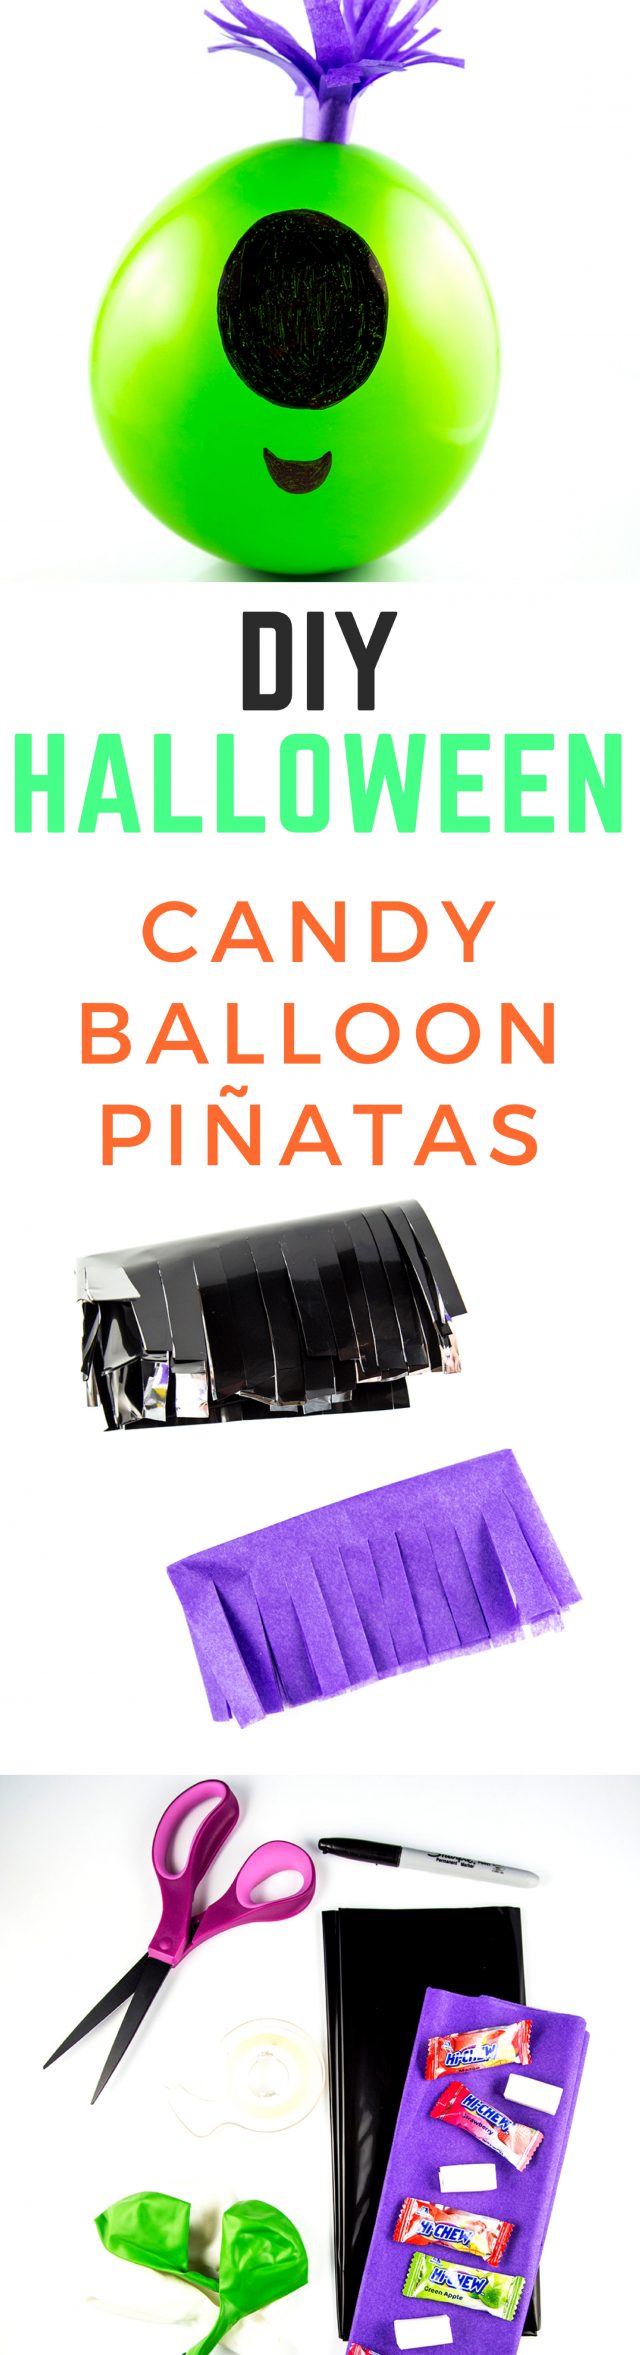 DIY Halloween Candy Balloon Piñatas